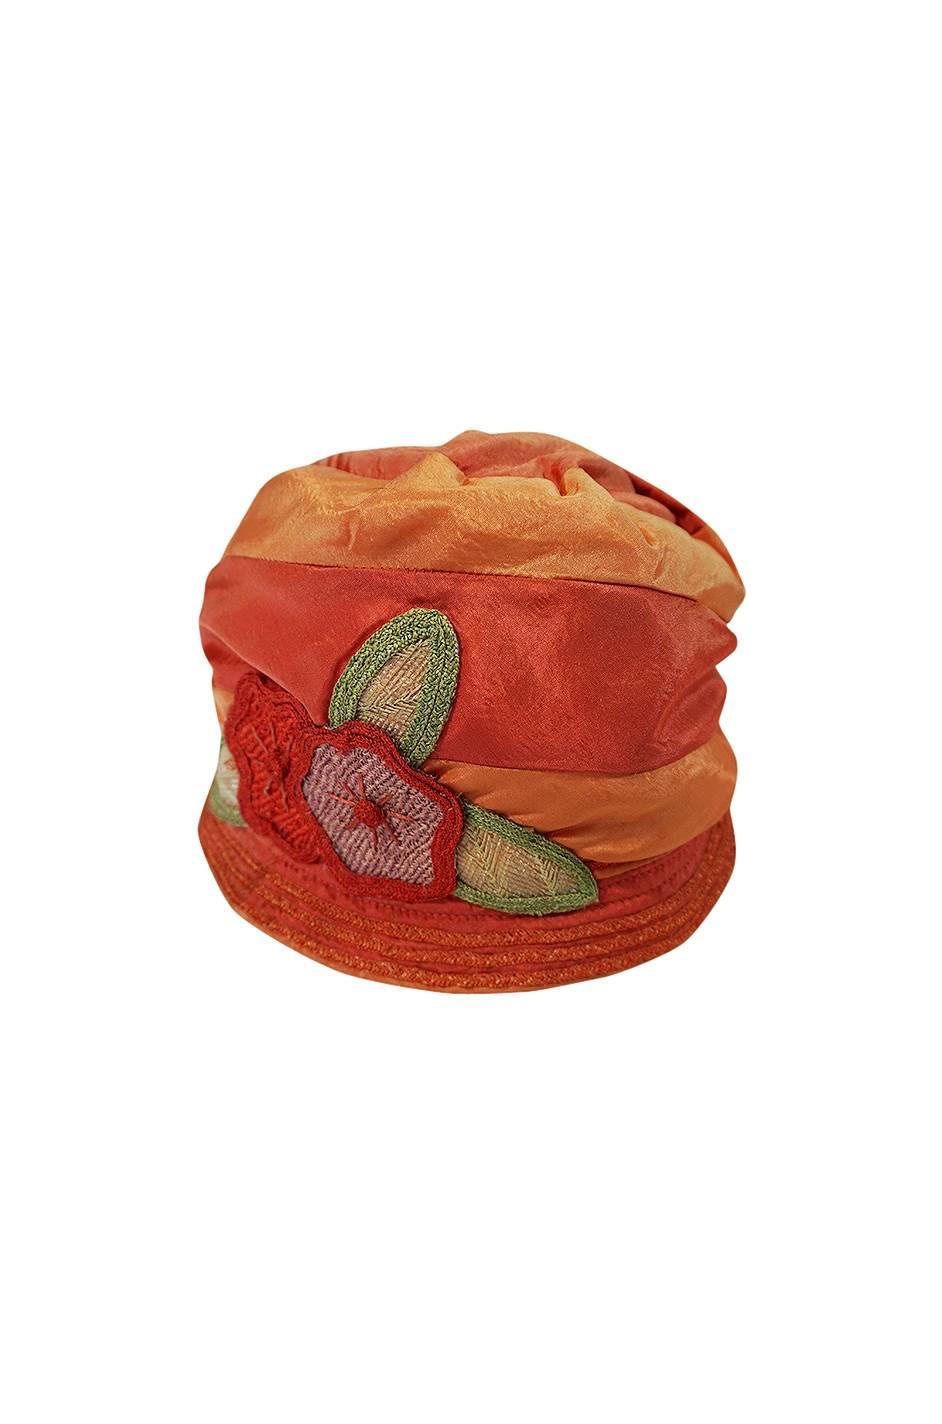 Women's or Men's 1920s Peach & Coral Silk Floral Applique Flapper Cloche Hat